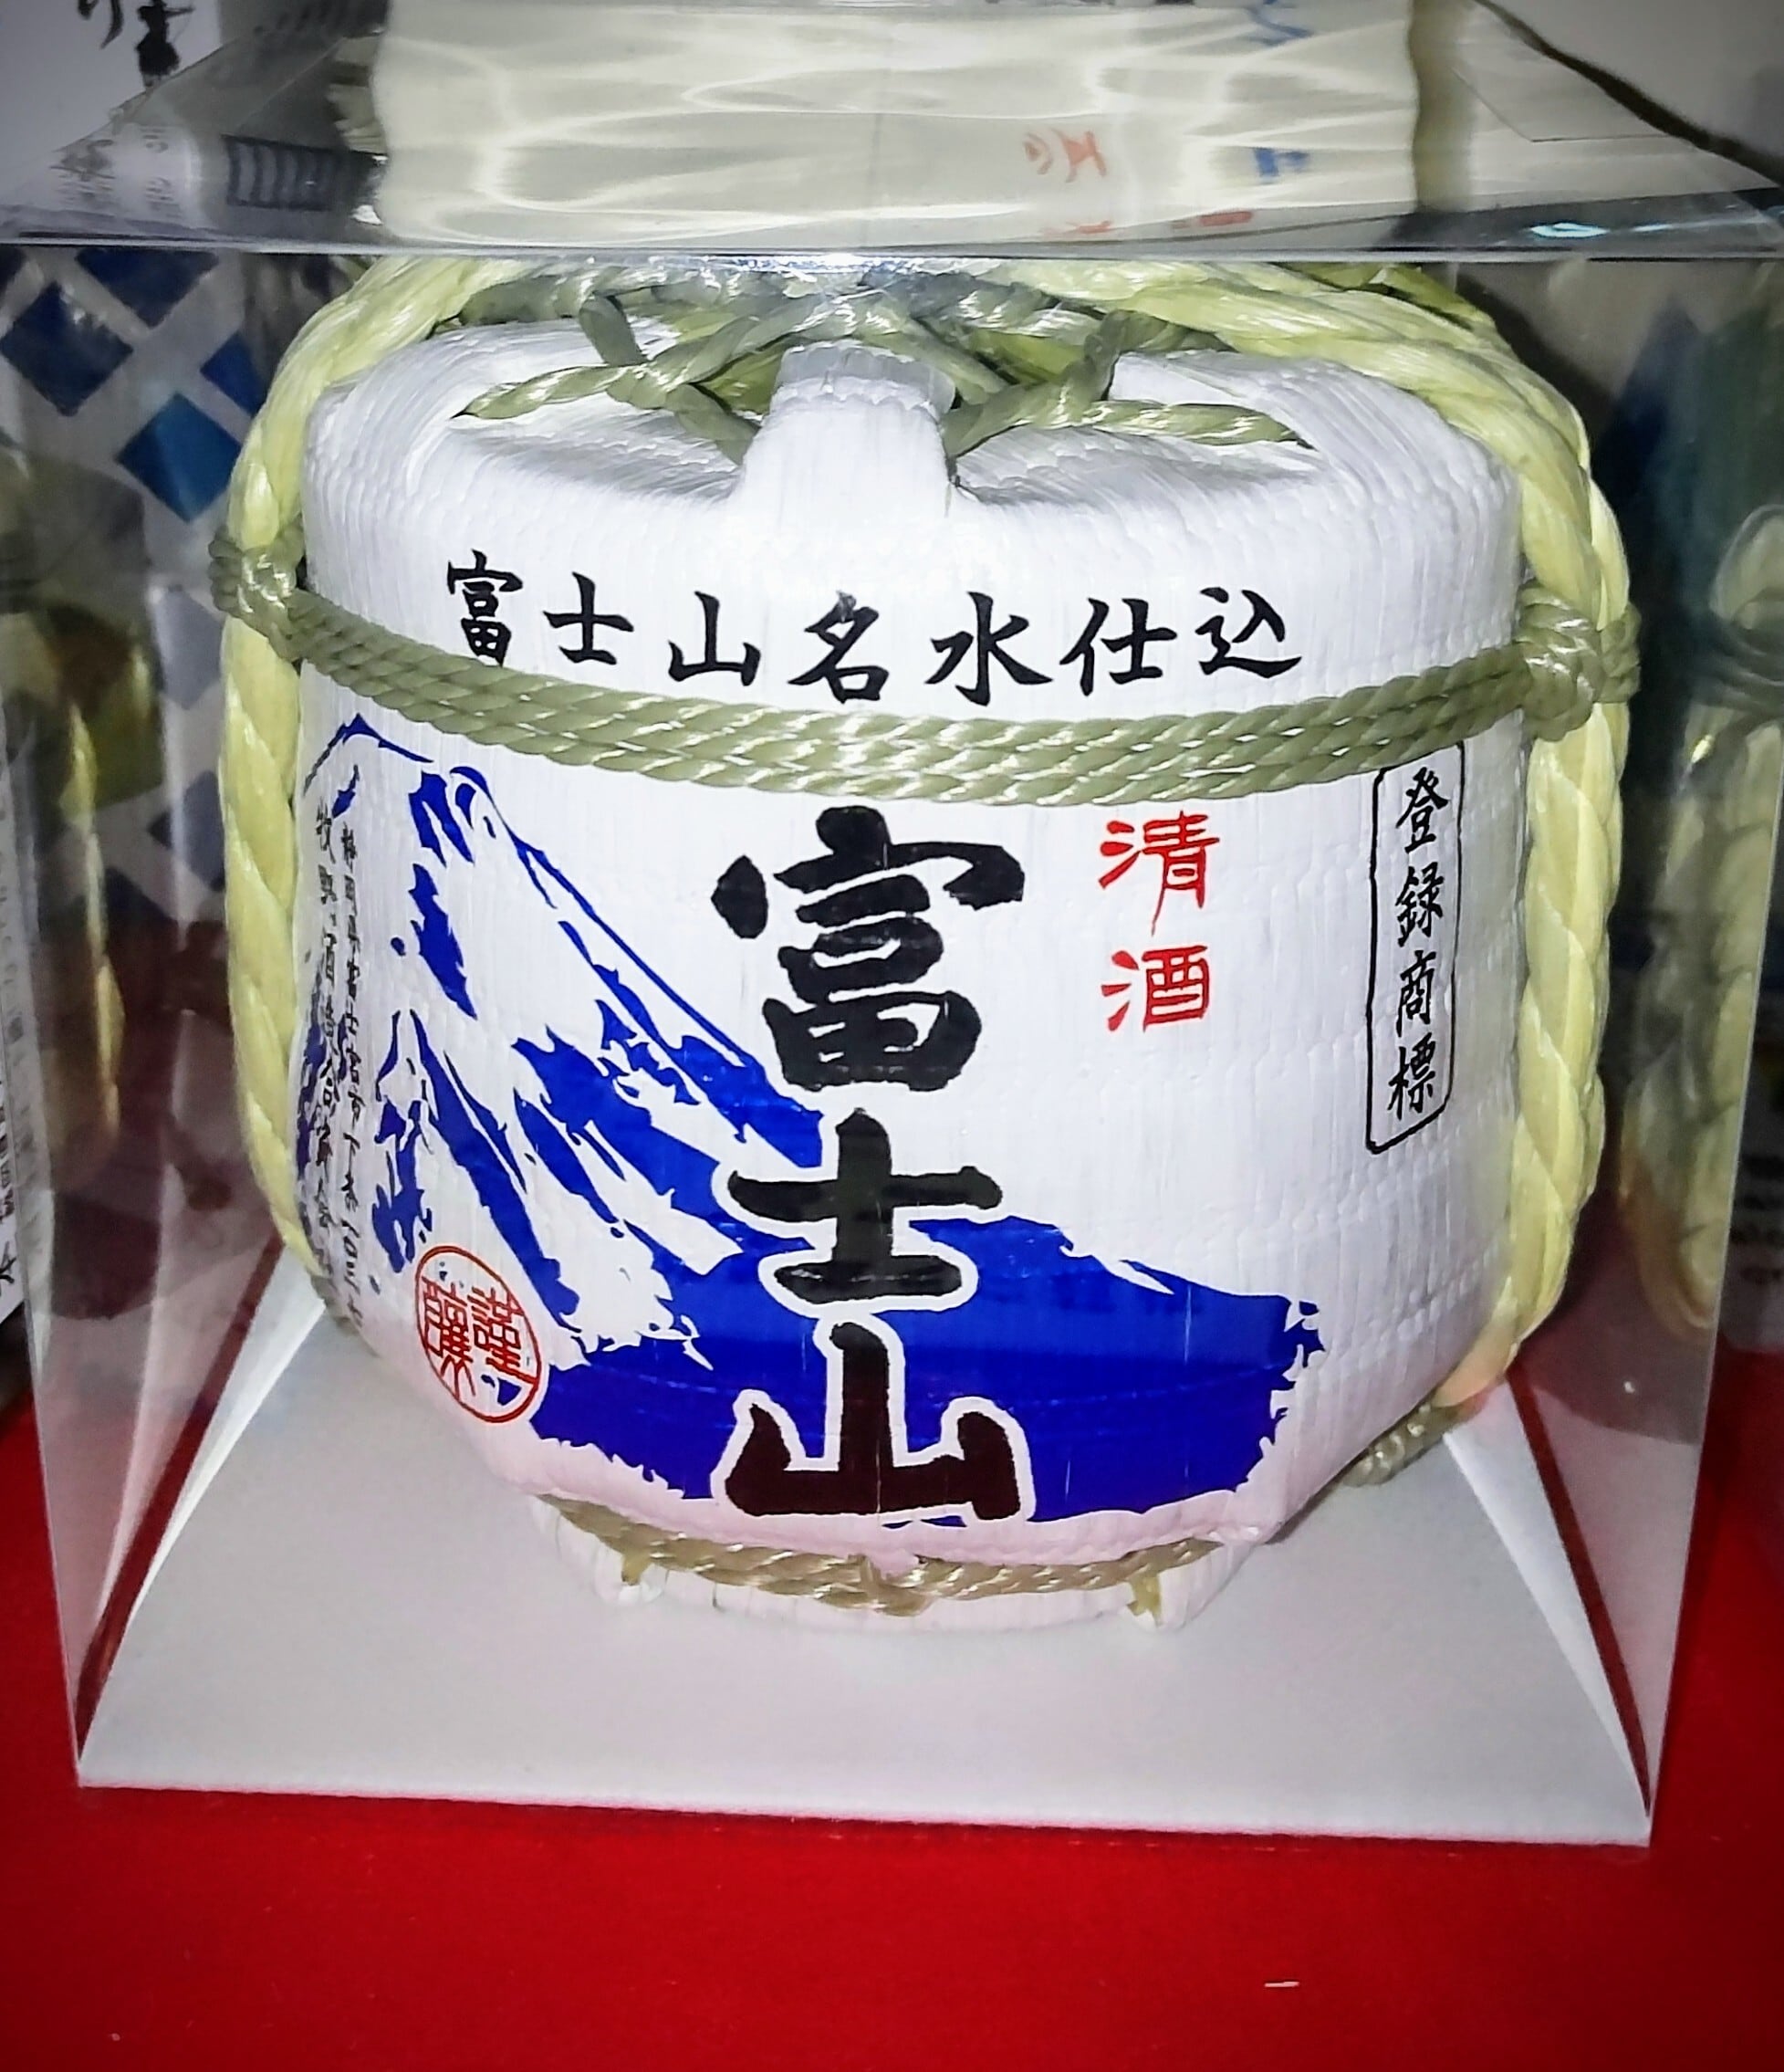 「ミニ菰樽 富士山」 本醸造 クリアケース入 300ML | 牧野酒造(資